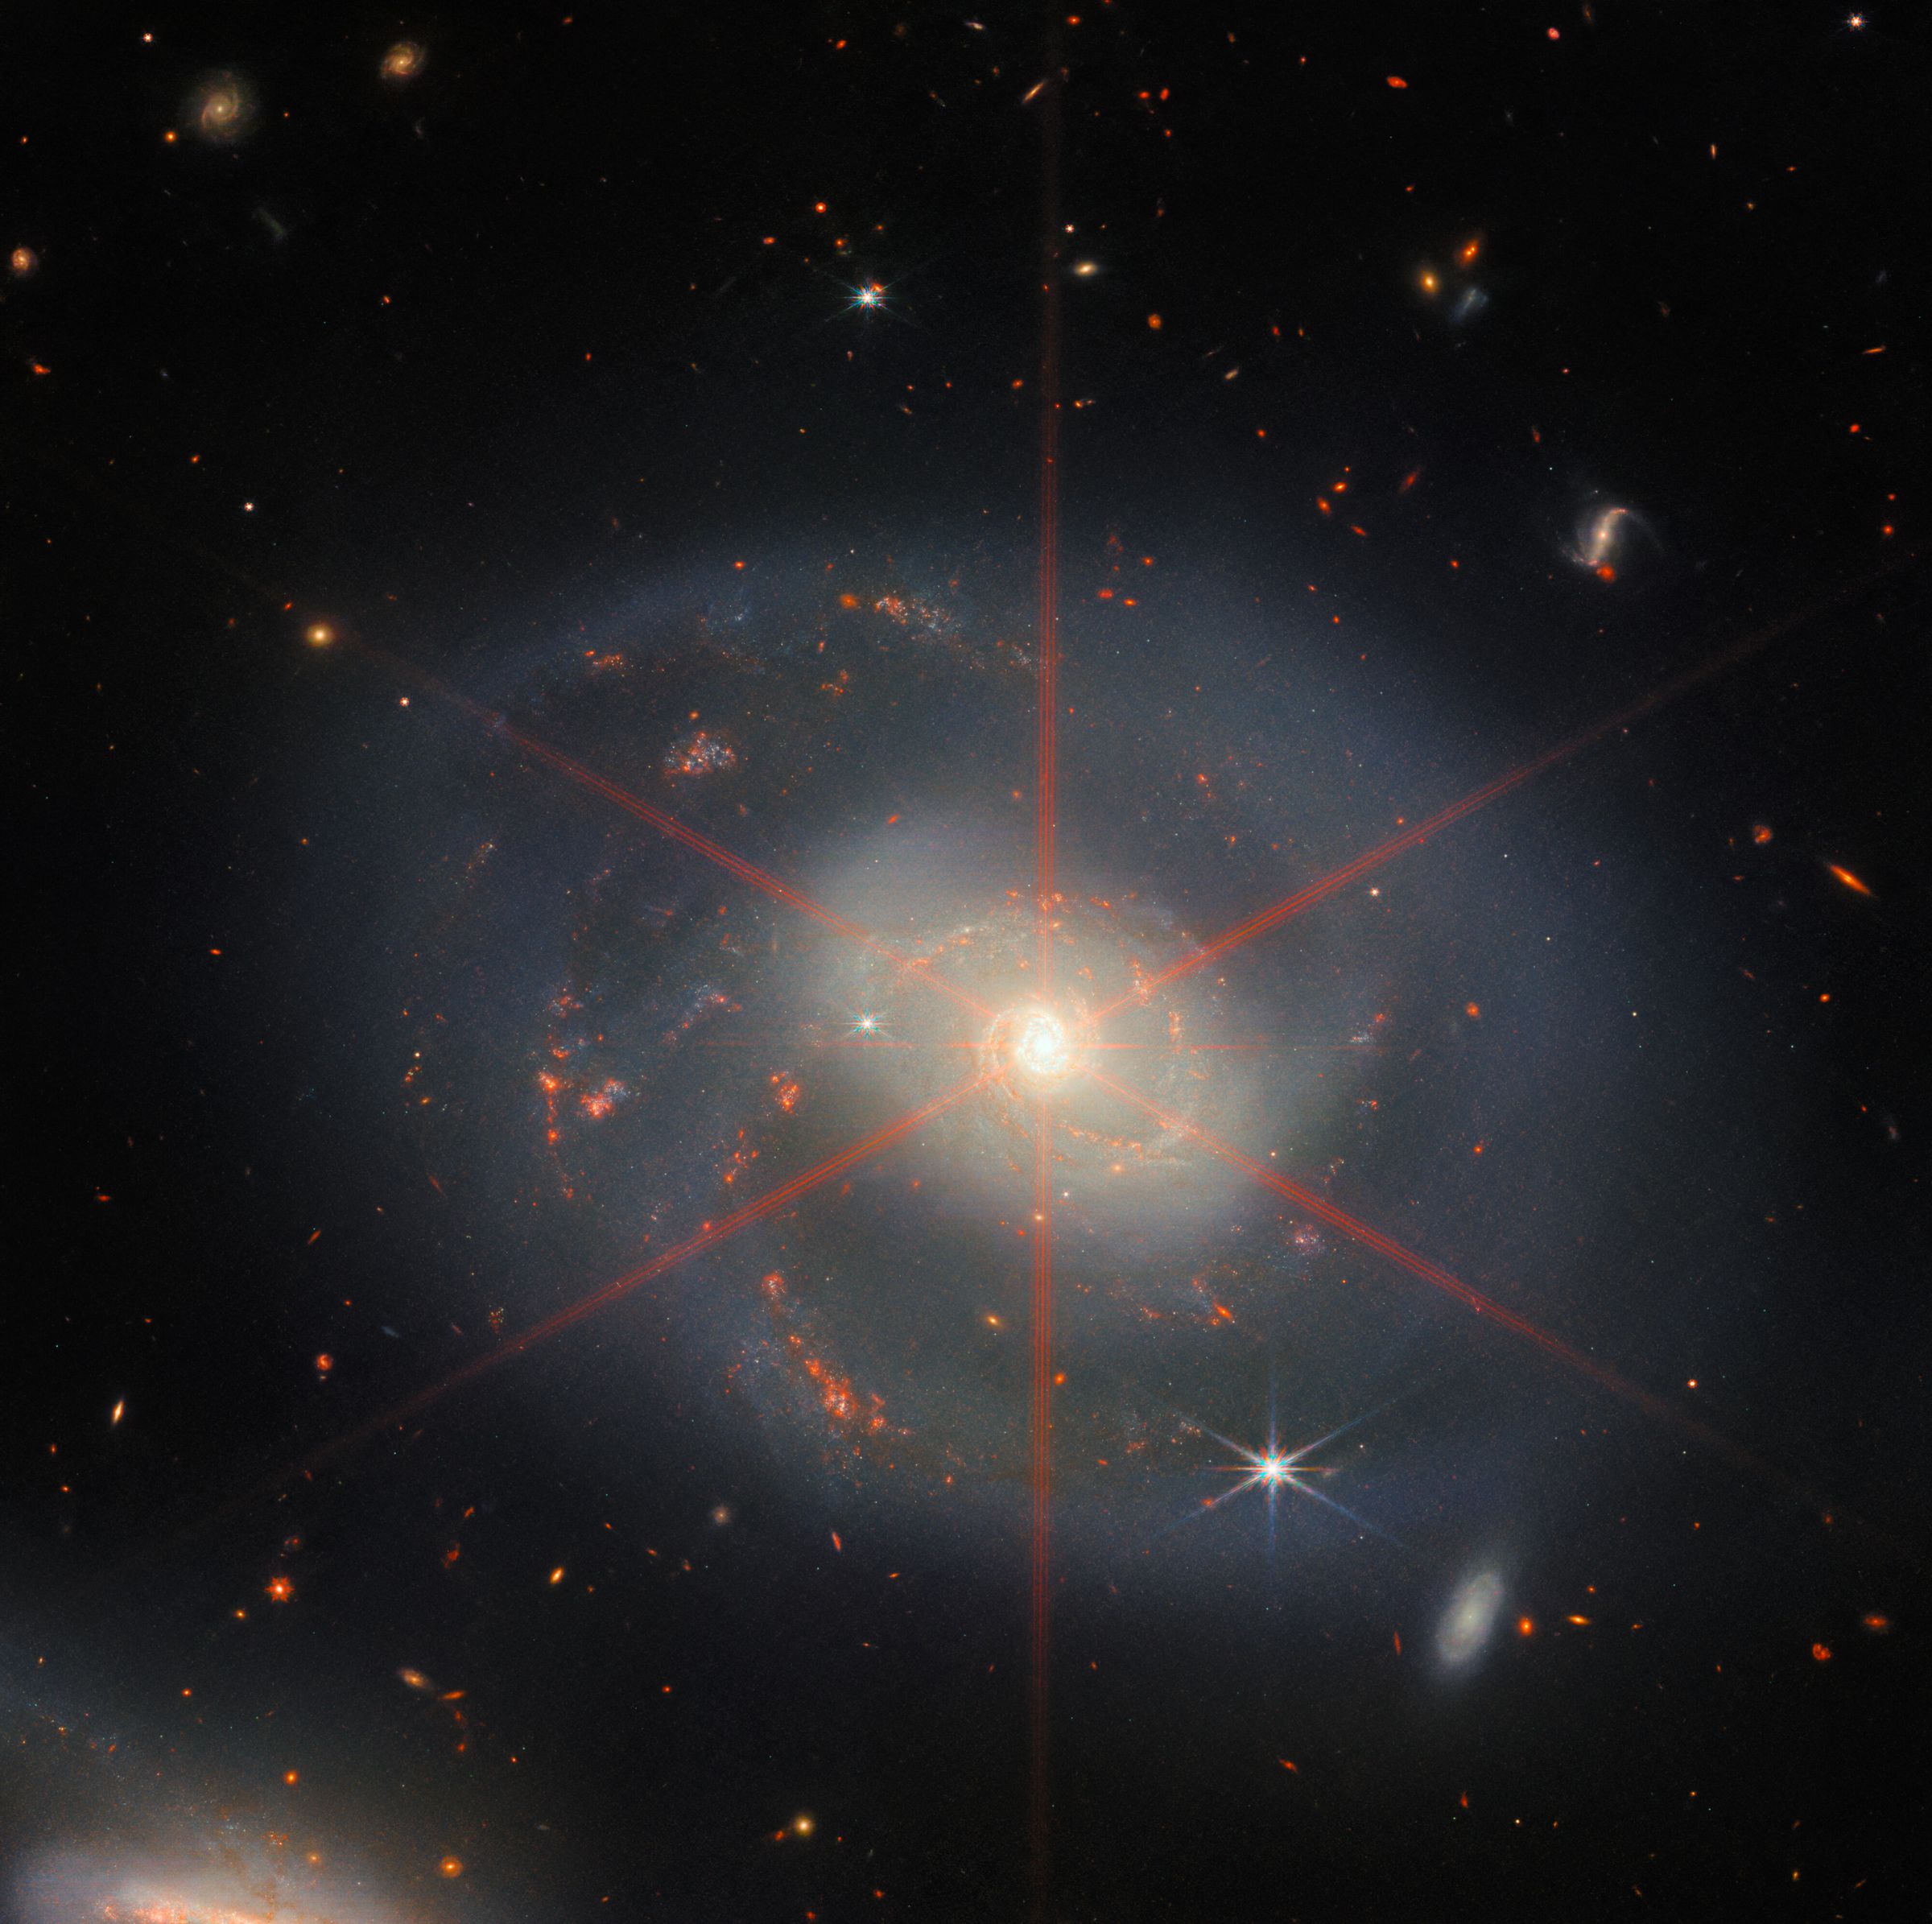 Gambar ini menunjukkan sebuah galaksi spiral yang didominasi oleh wilayah pusat yang terang.  Galaksi memiliki rona biru-ungu dengan daerah jingga-merah yang dipenuhi bintang.  Lonjakan difraksi besar juga dapat dilihat, yang muncul sebagai pola bintang di wilayah tengah galaksi.  Banyak bintang dan galaksi mengisi pemandangan latar belakang